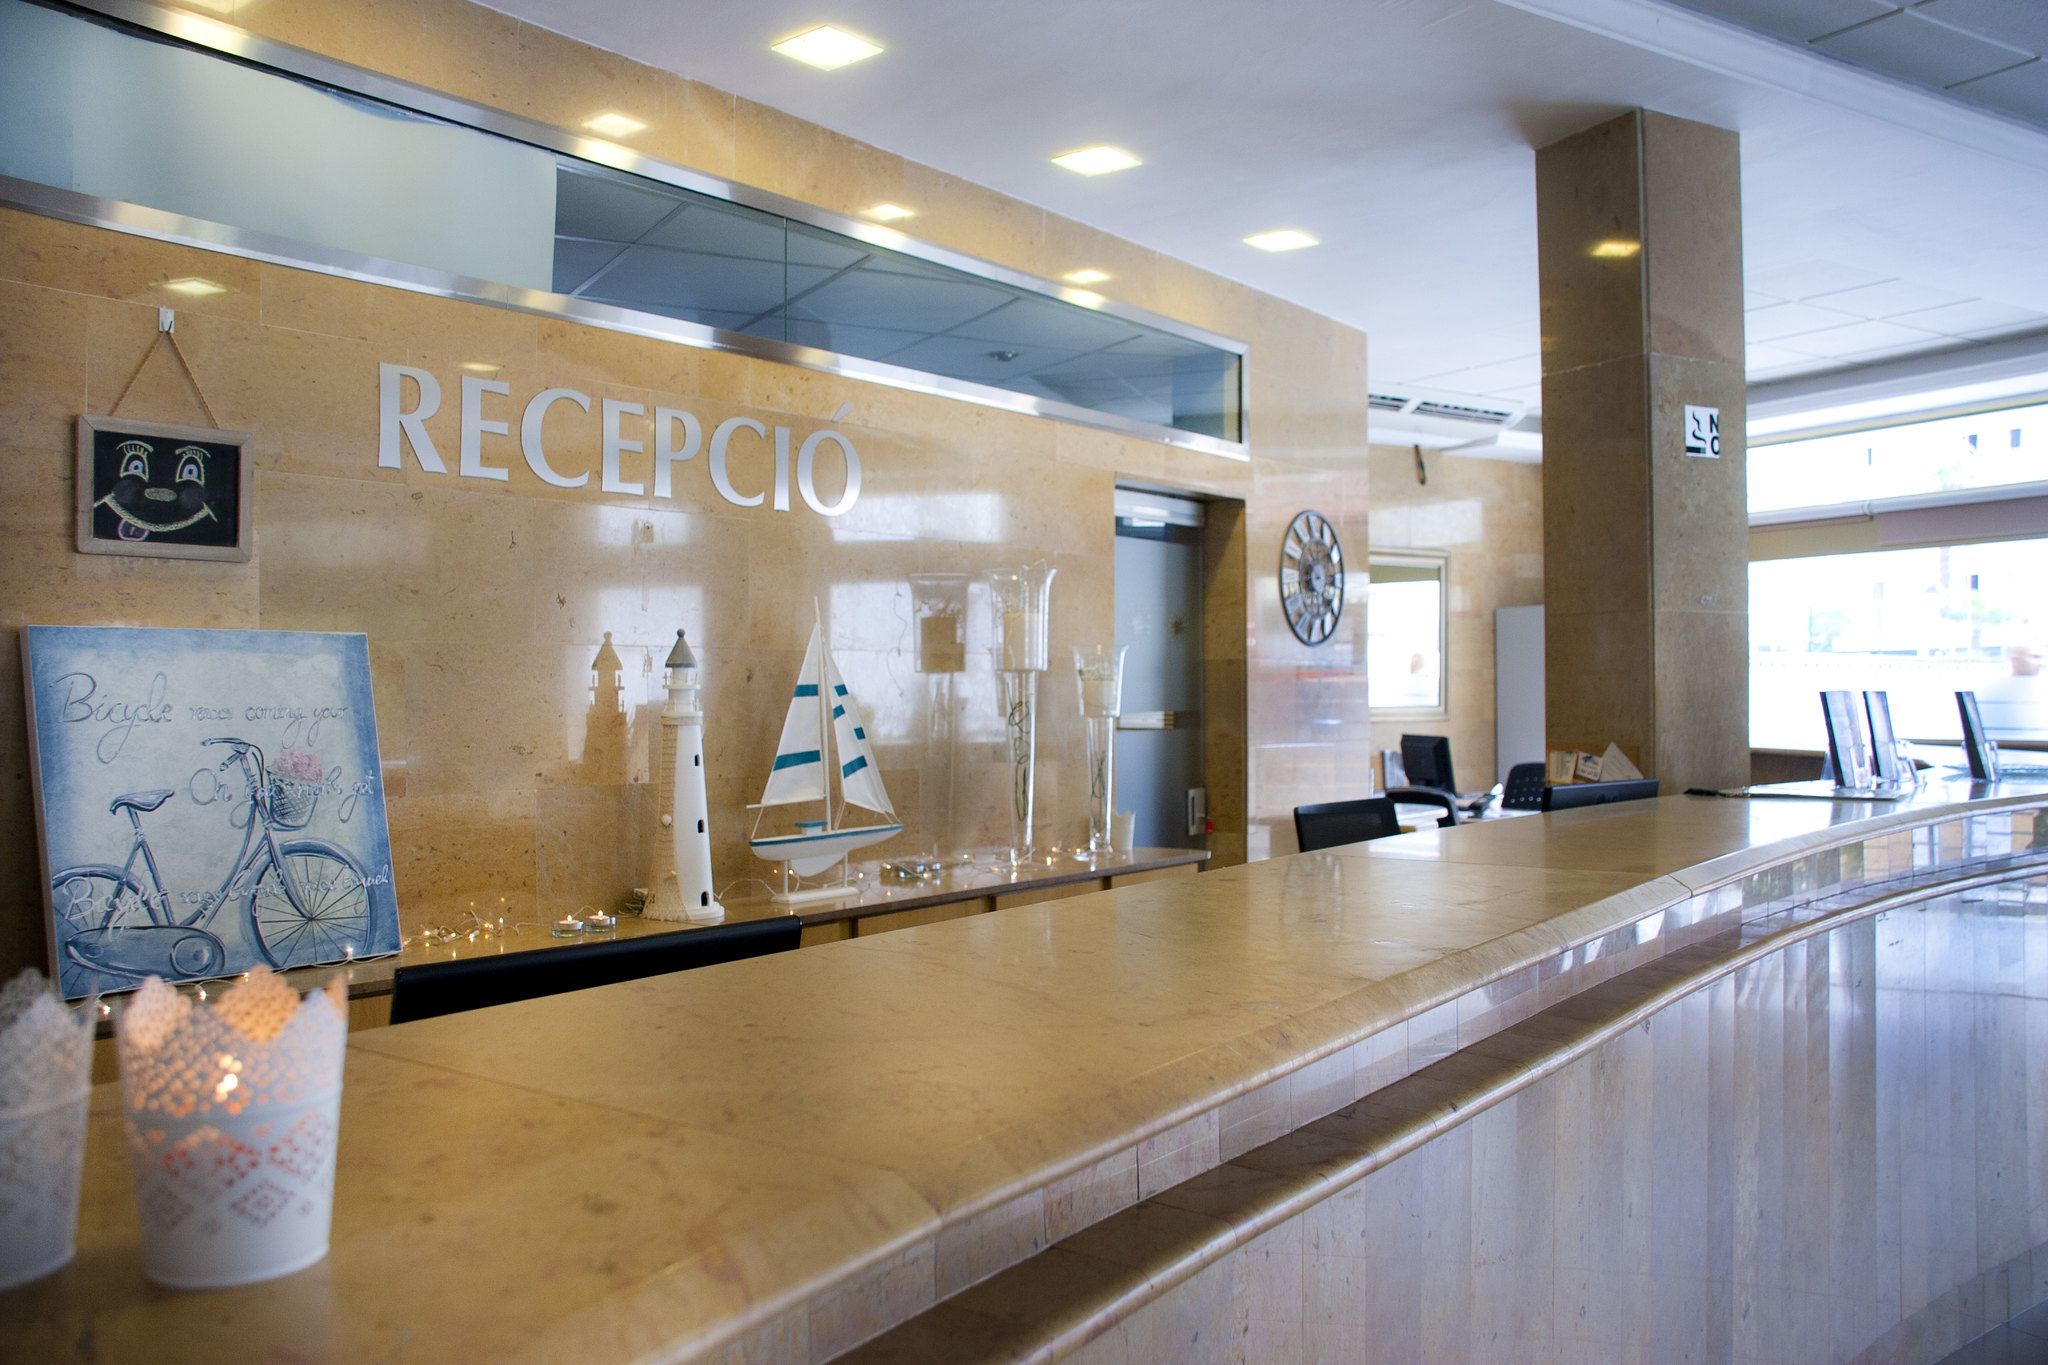 Hotel Bon Repos - Calella